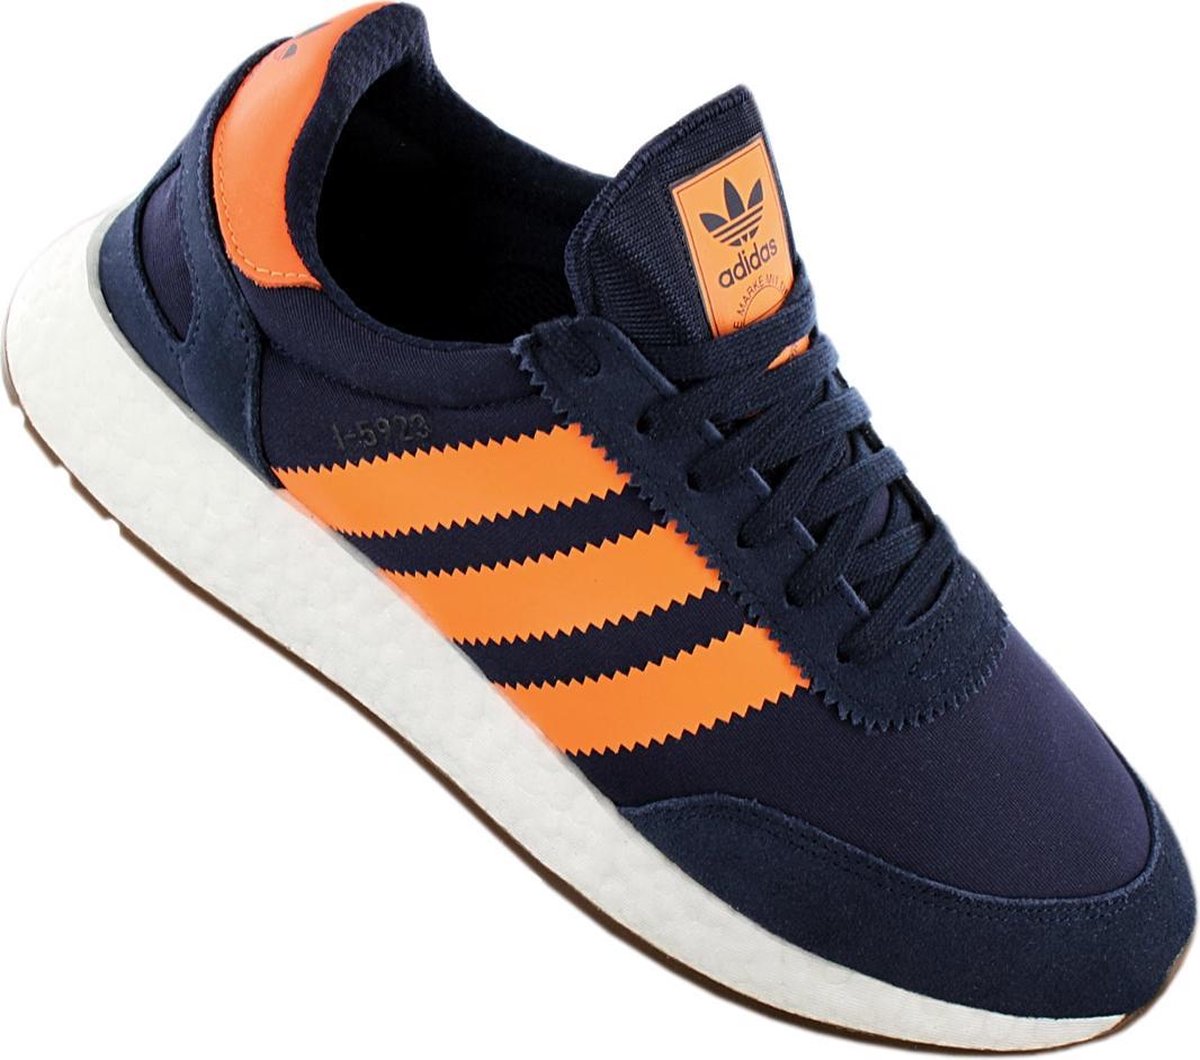 Adidas Originals I-5923 Boost Heren Sneakers Sportschoenen Schoenen Navy- Blauw B37919 - Schoenen.nl